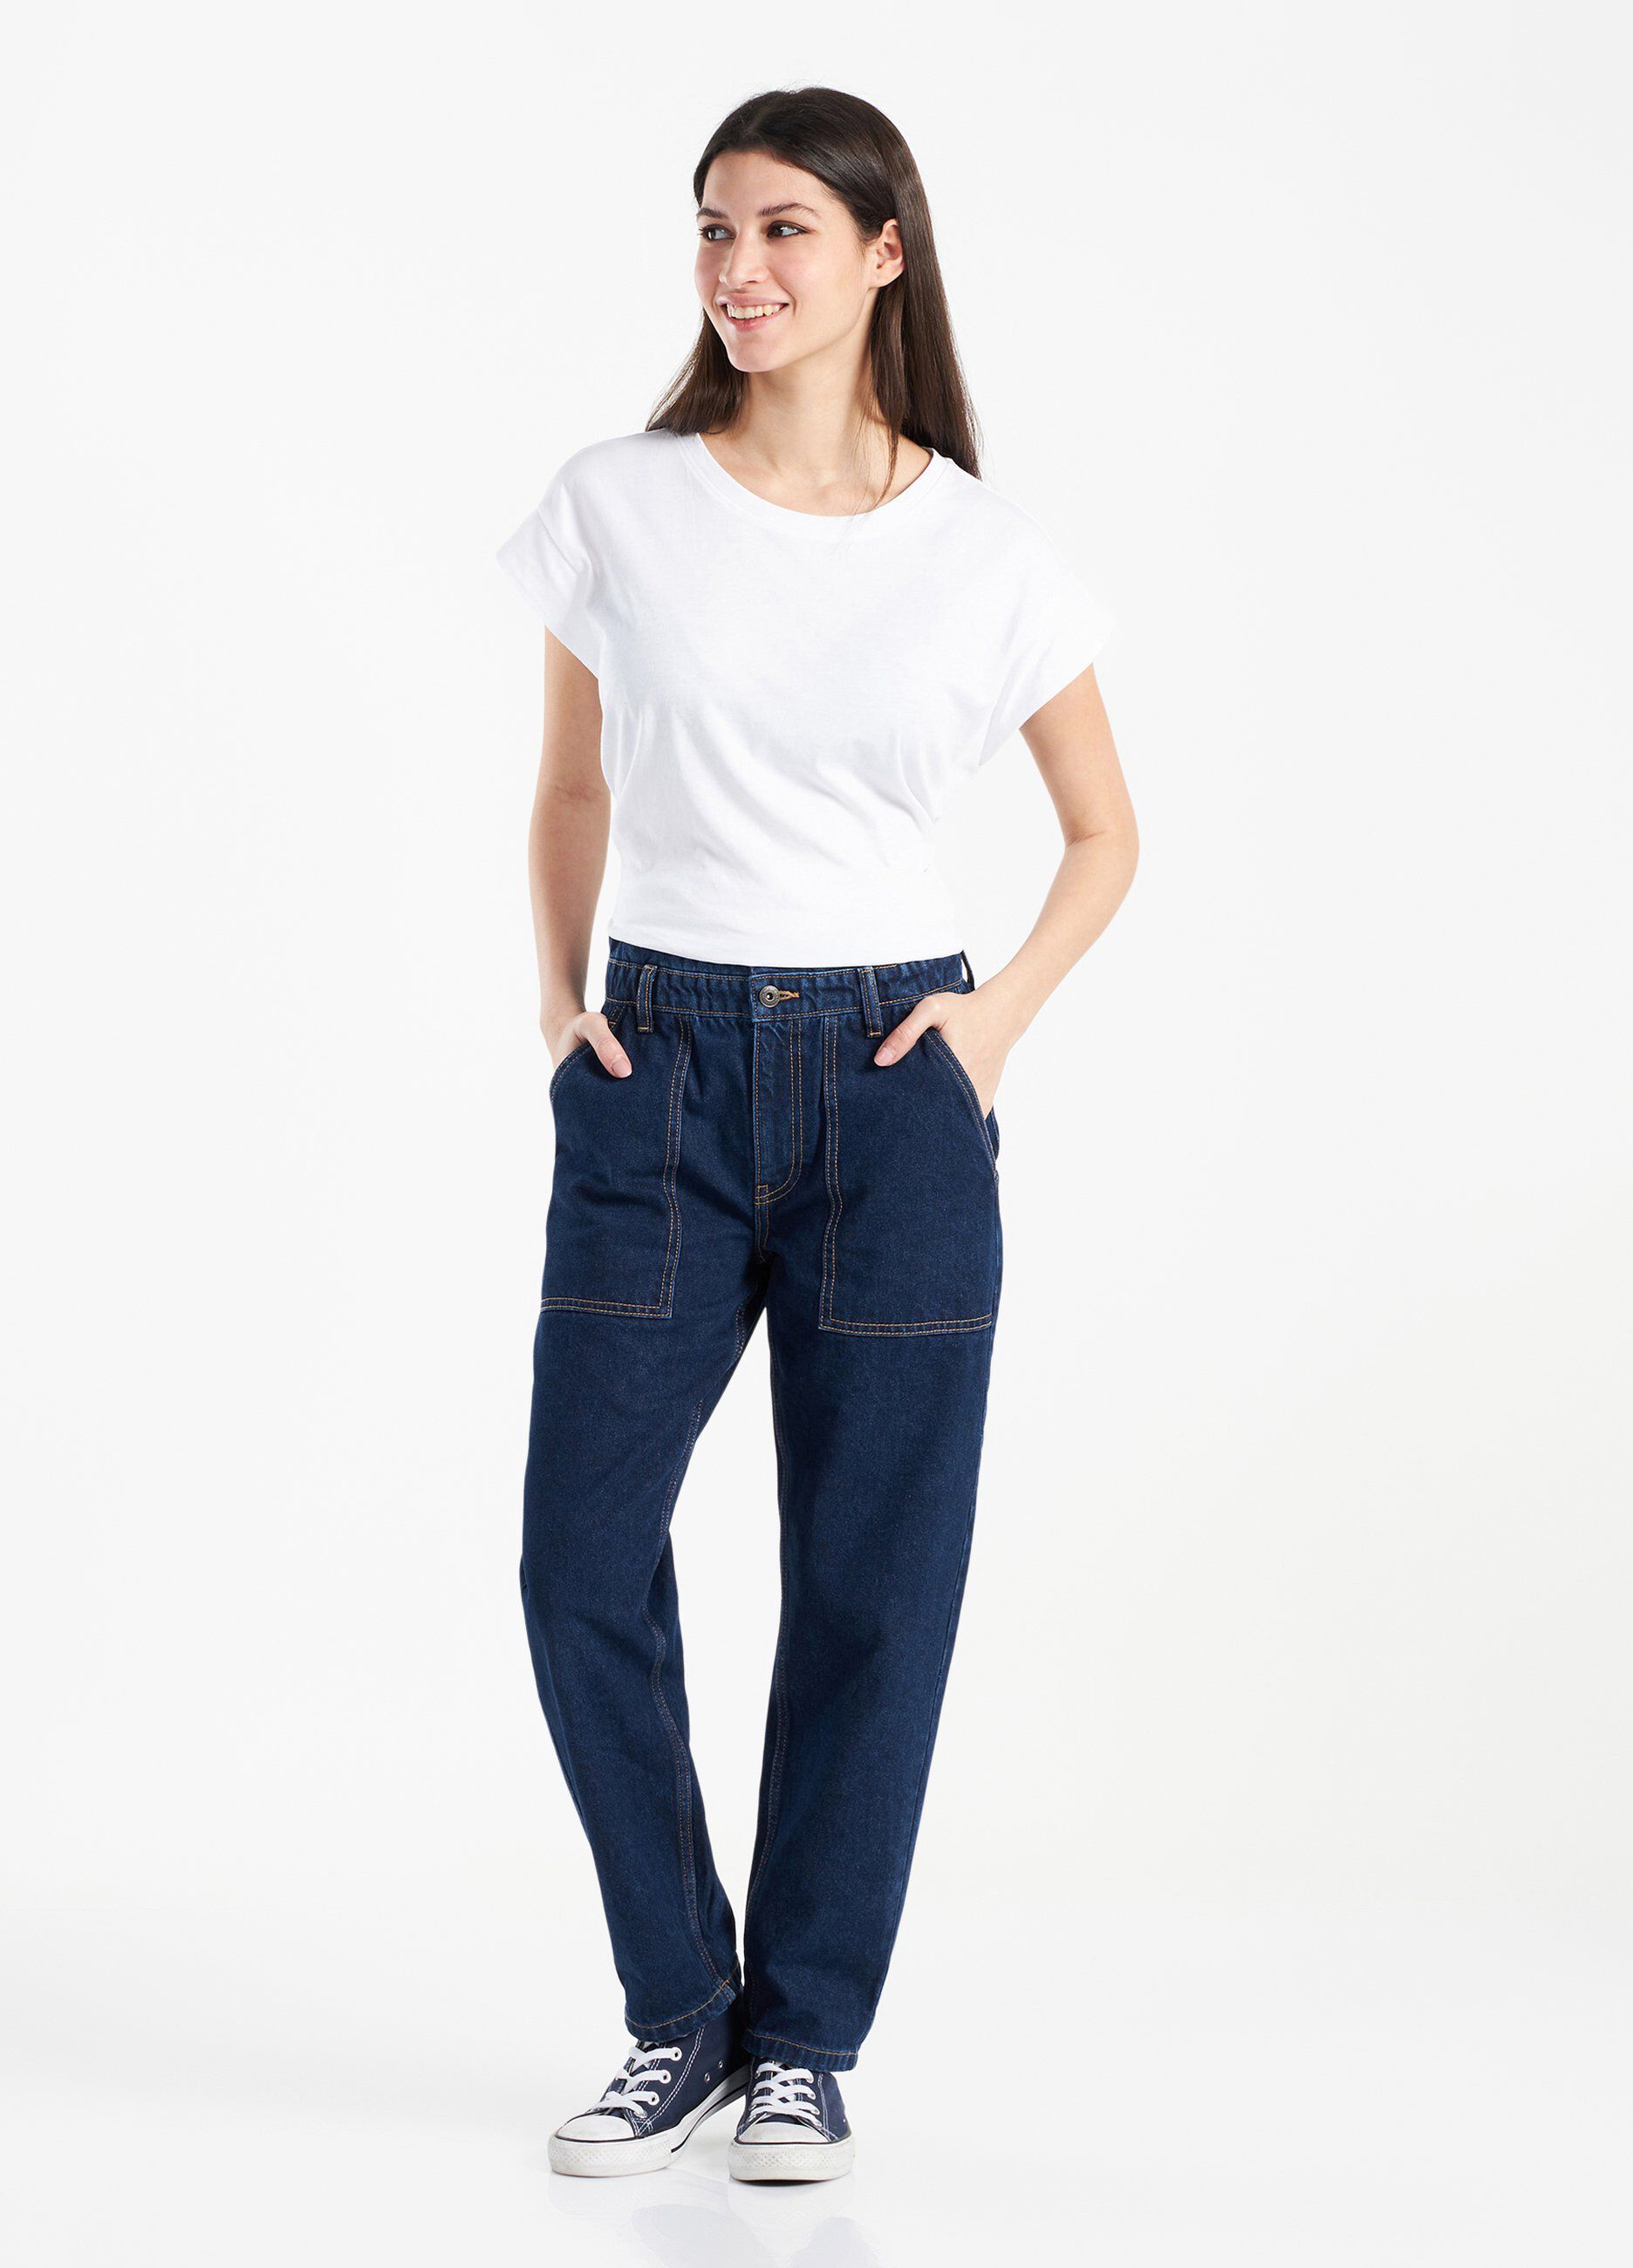 Jeans Holistic in puro cotone donna_0